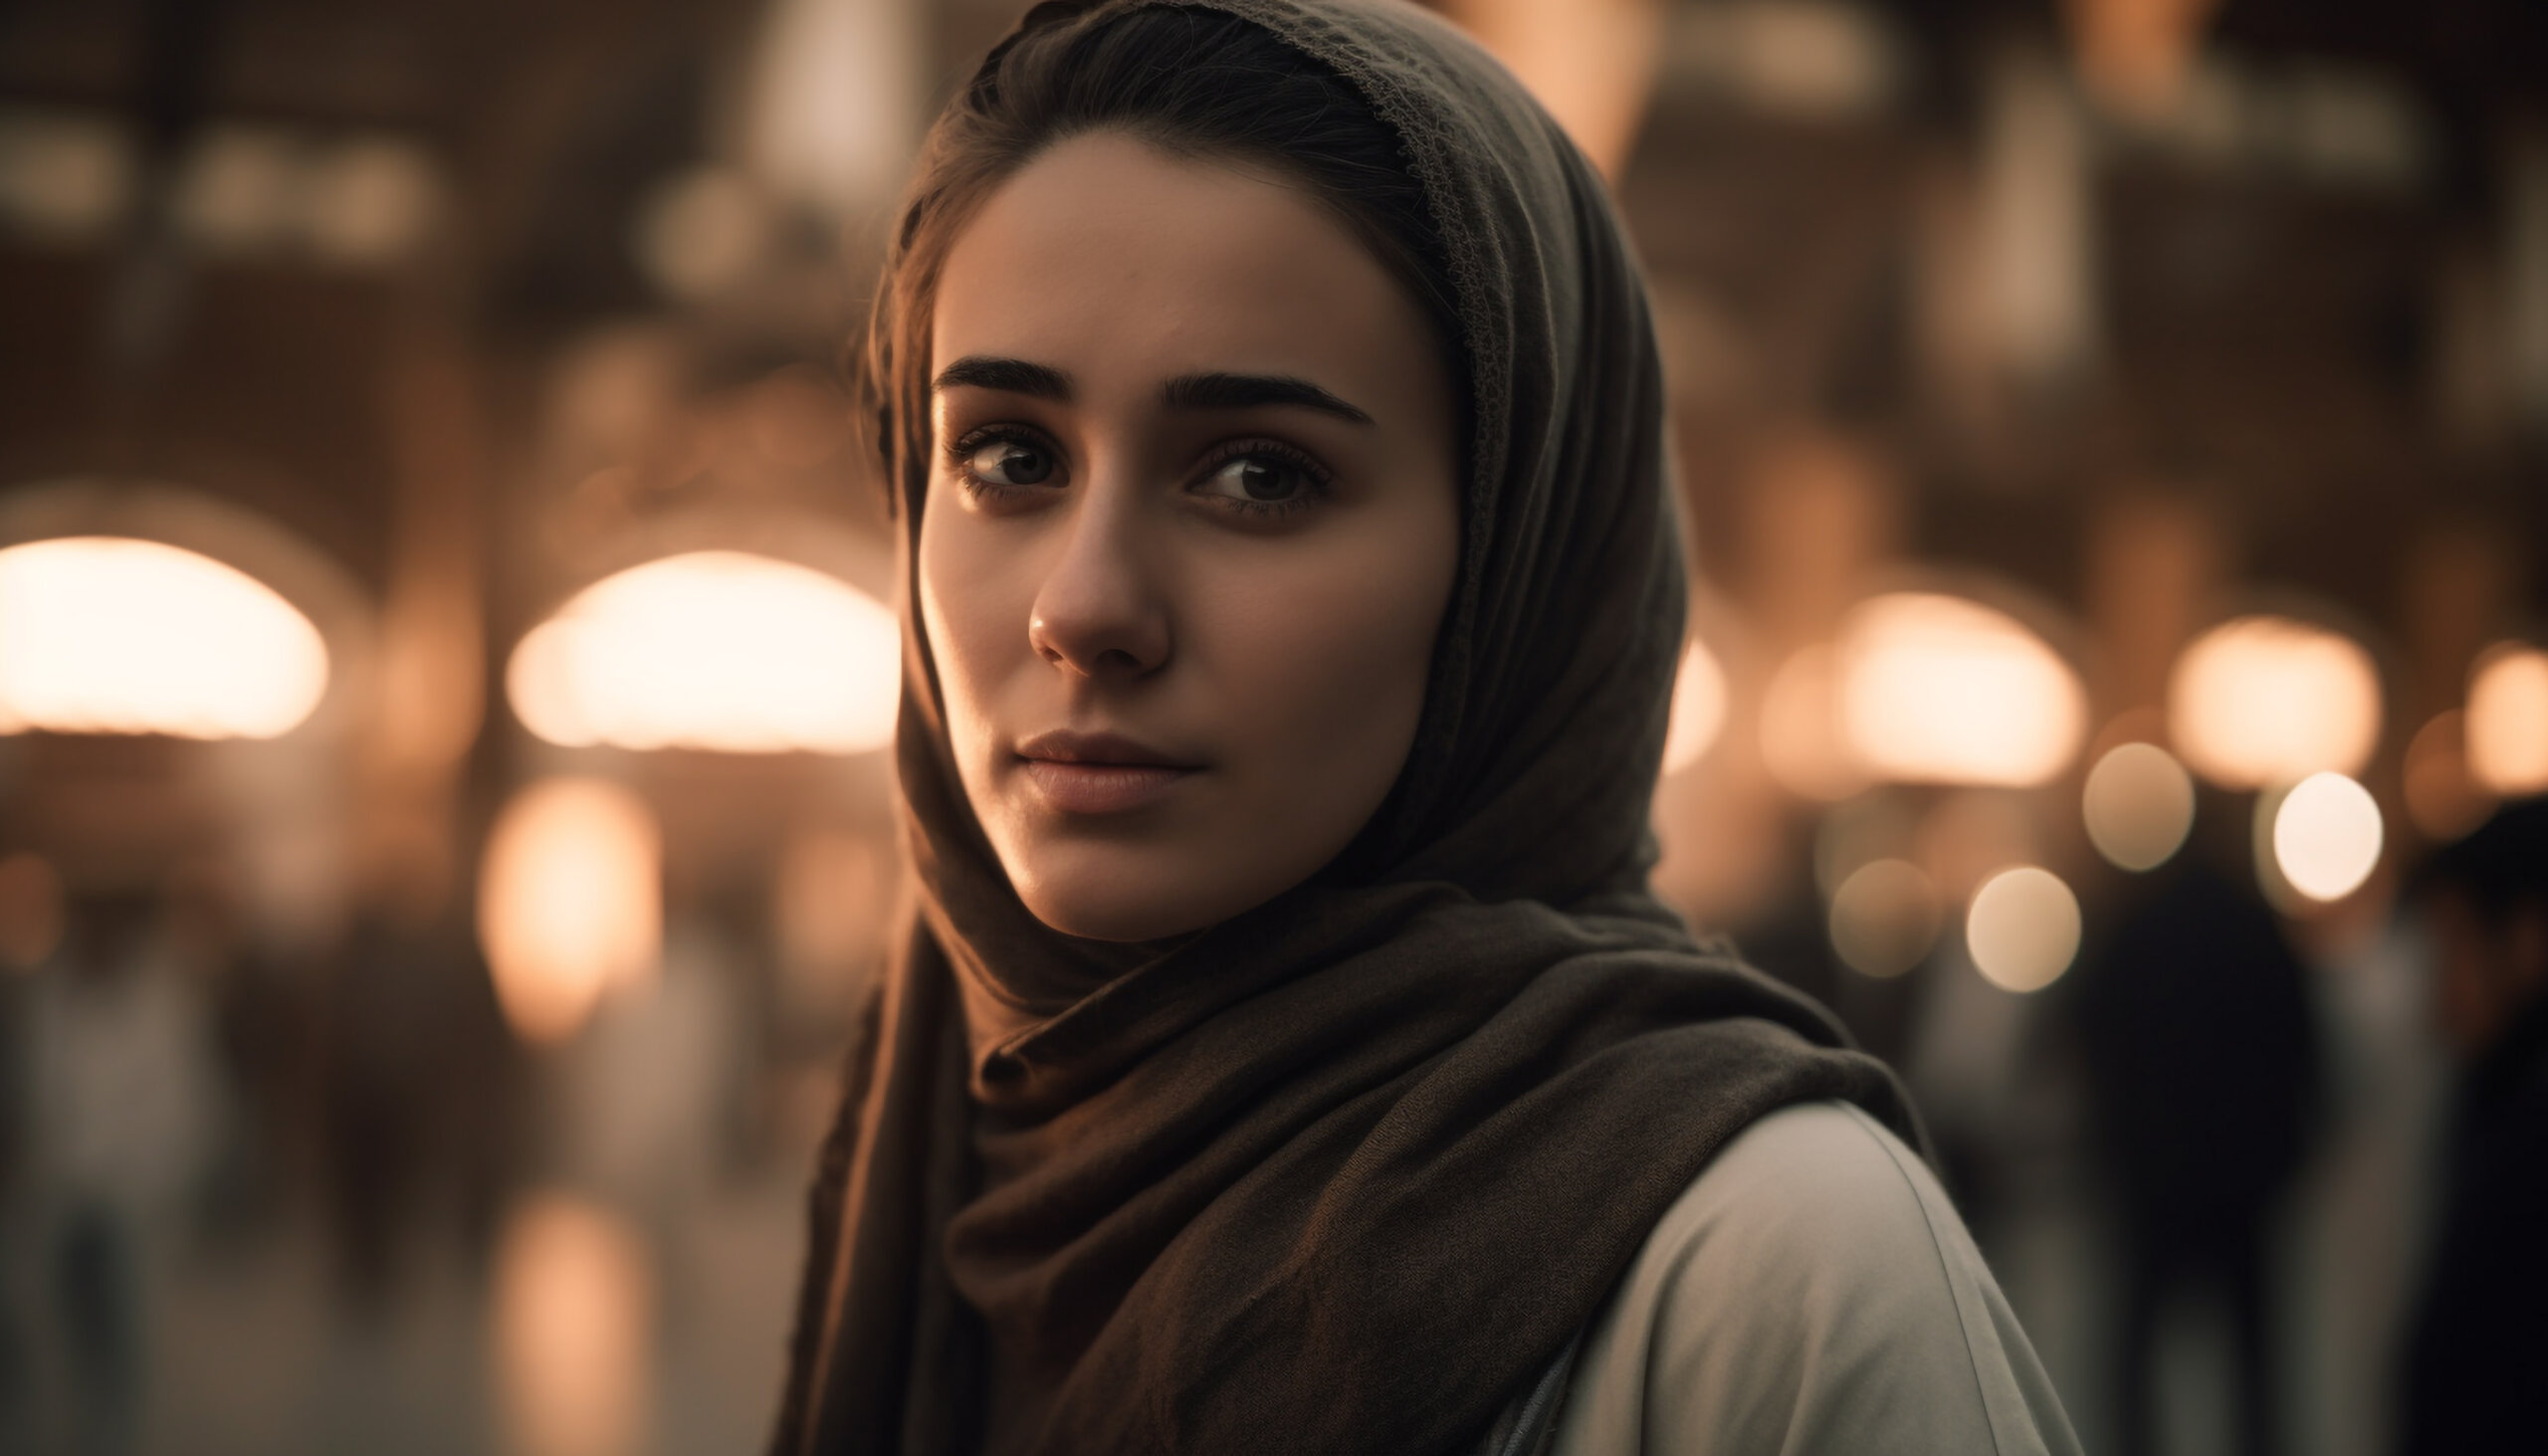 mulher arabe com uma busrca marrom seu rosto está exposto com espressão neutra ao fundo luzes 